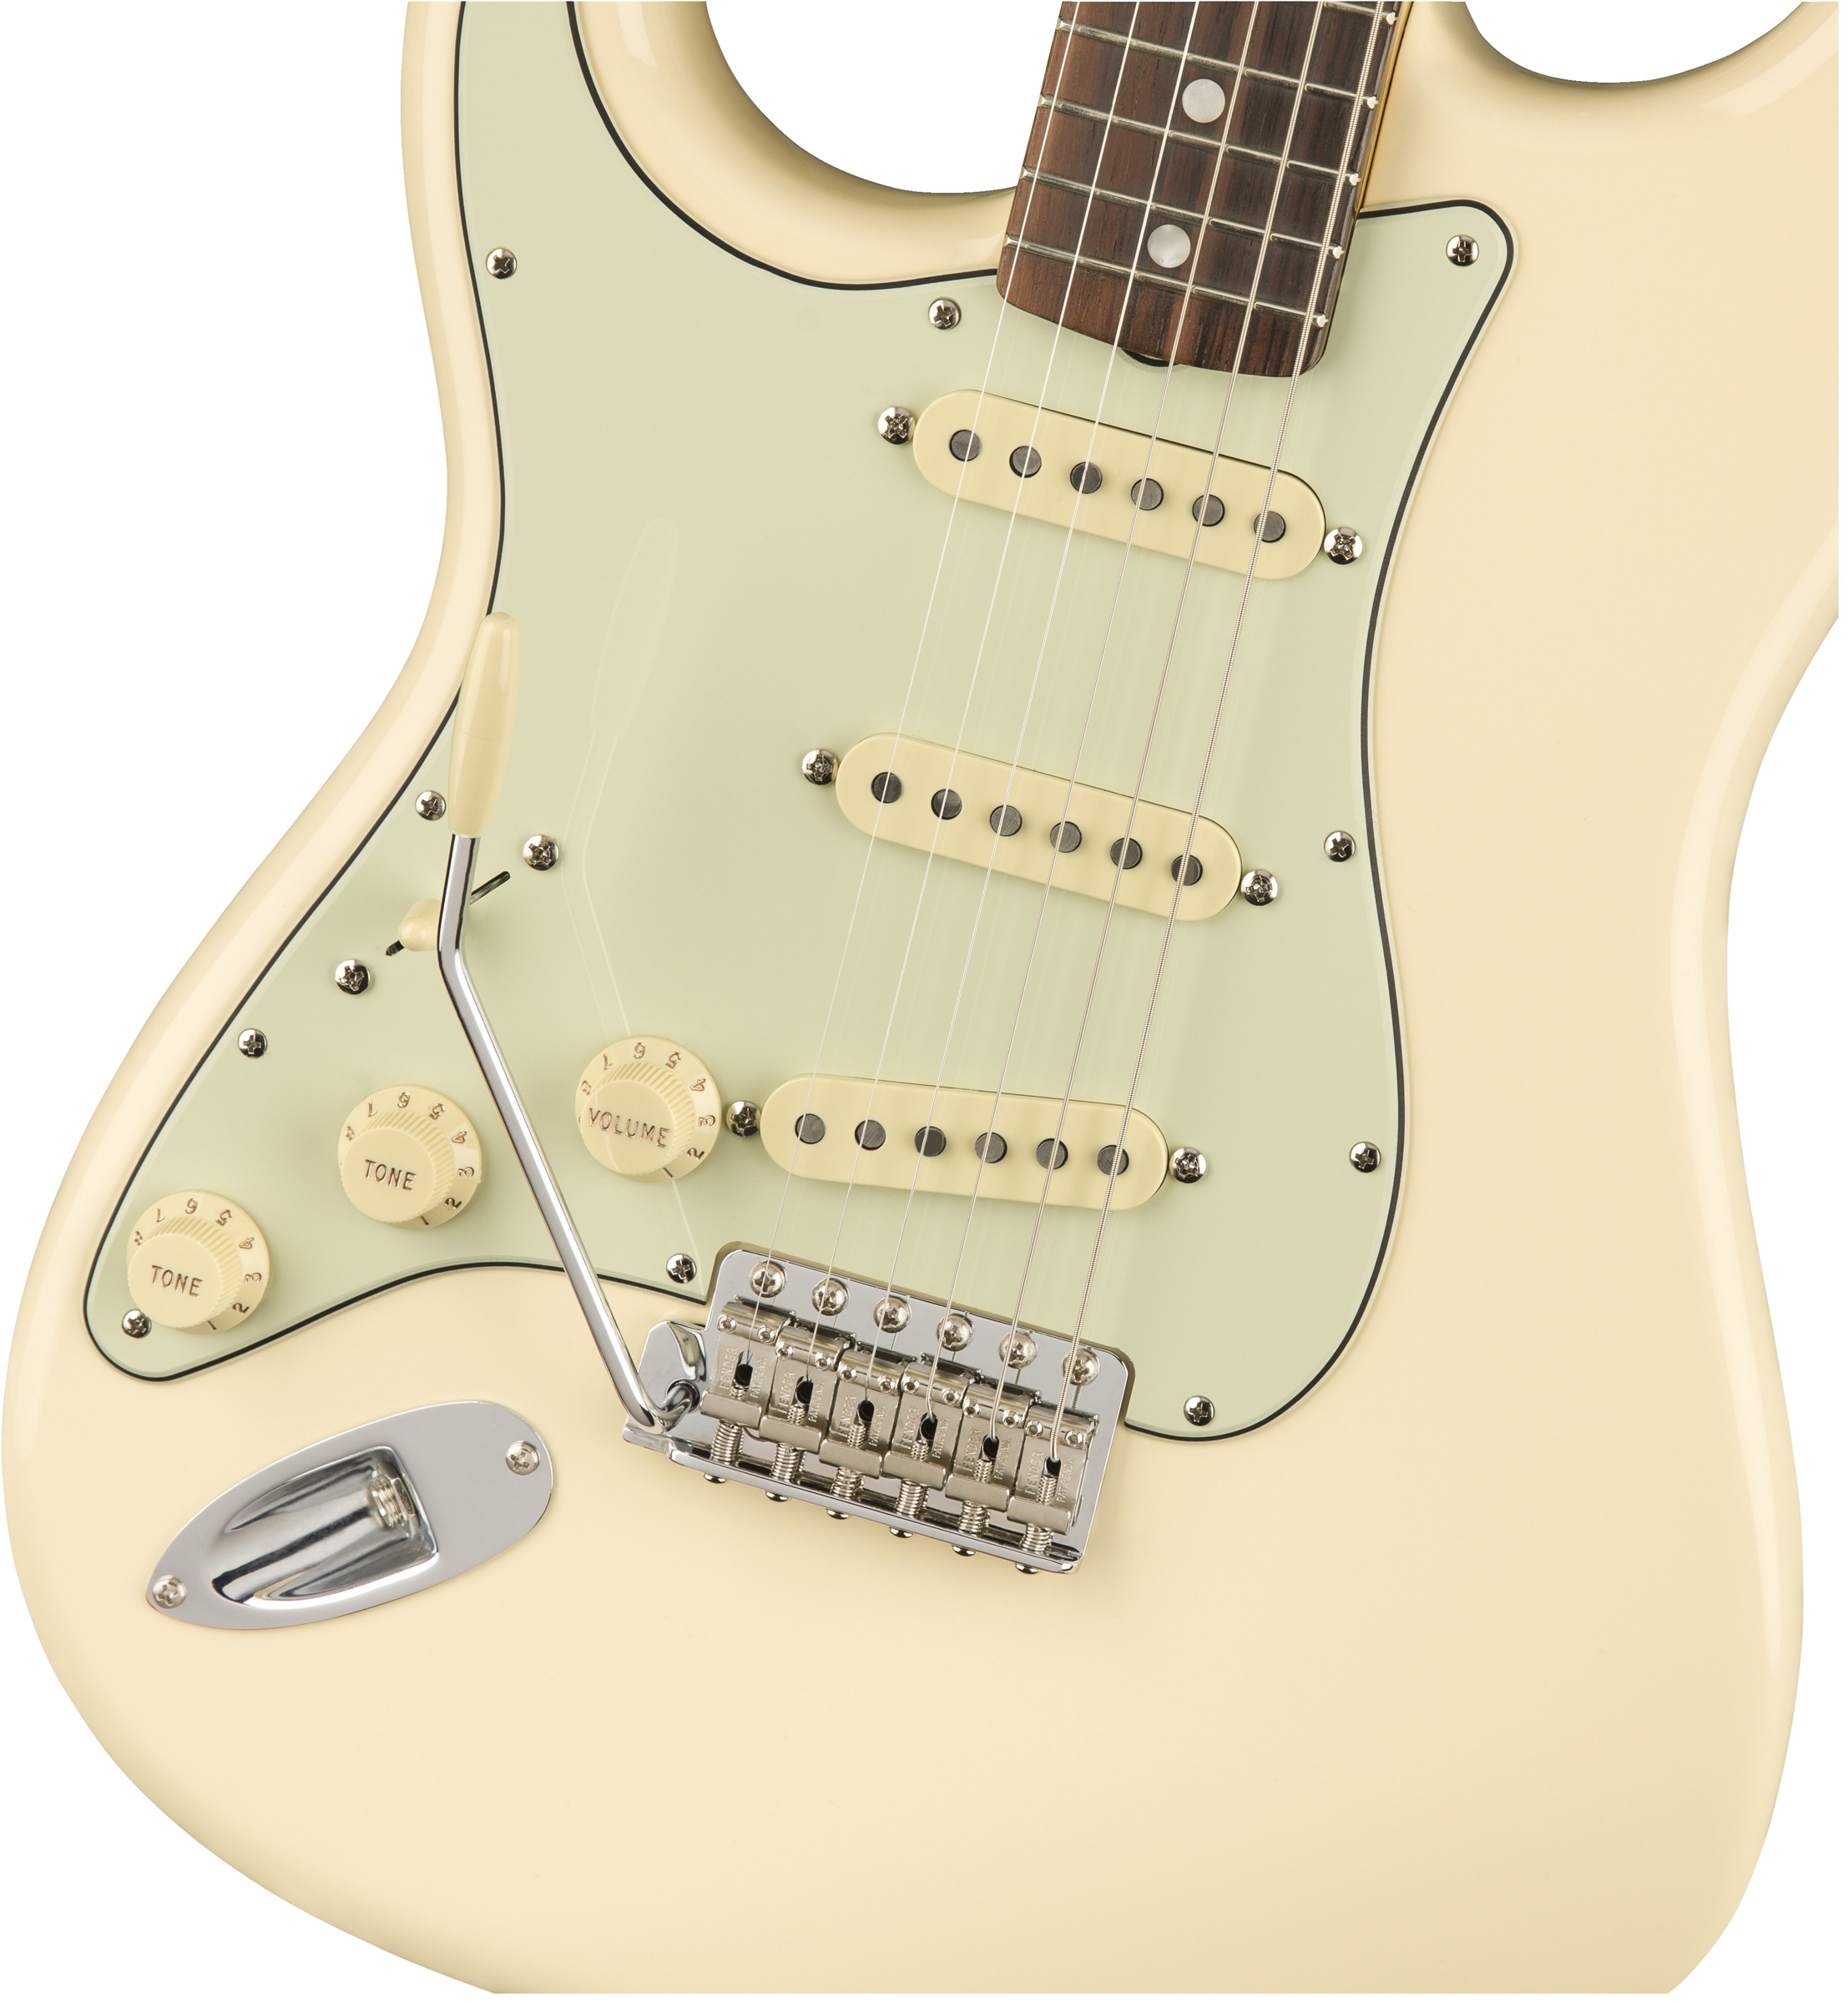 Fender Strat '60s Lh Gaucher American Original Usa Sss Rw - Olympic White - Linkshandige elektrische gitaar - Variation 1